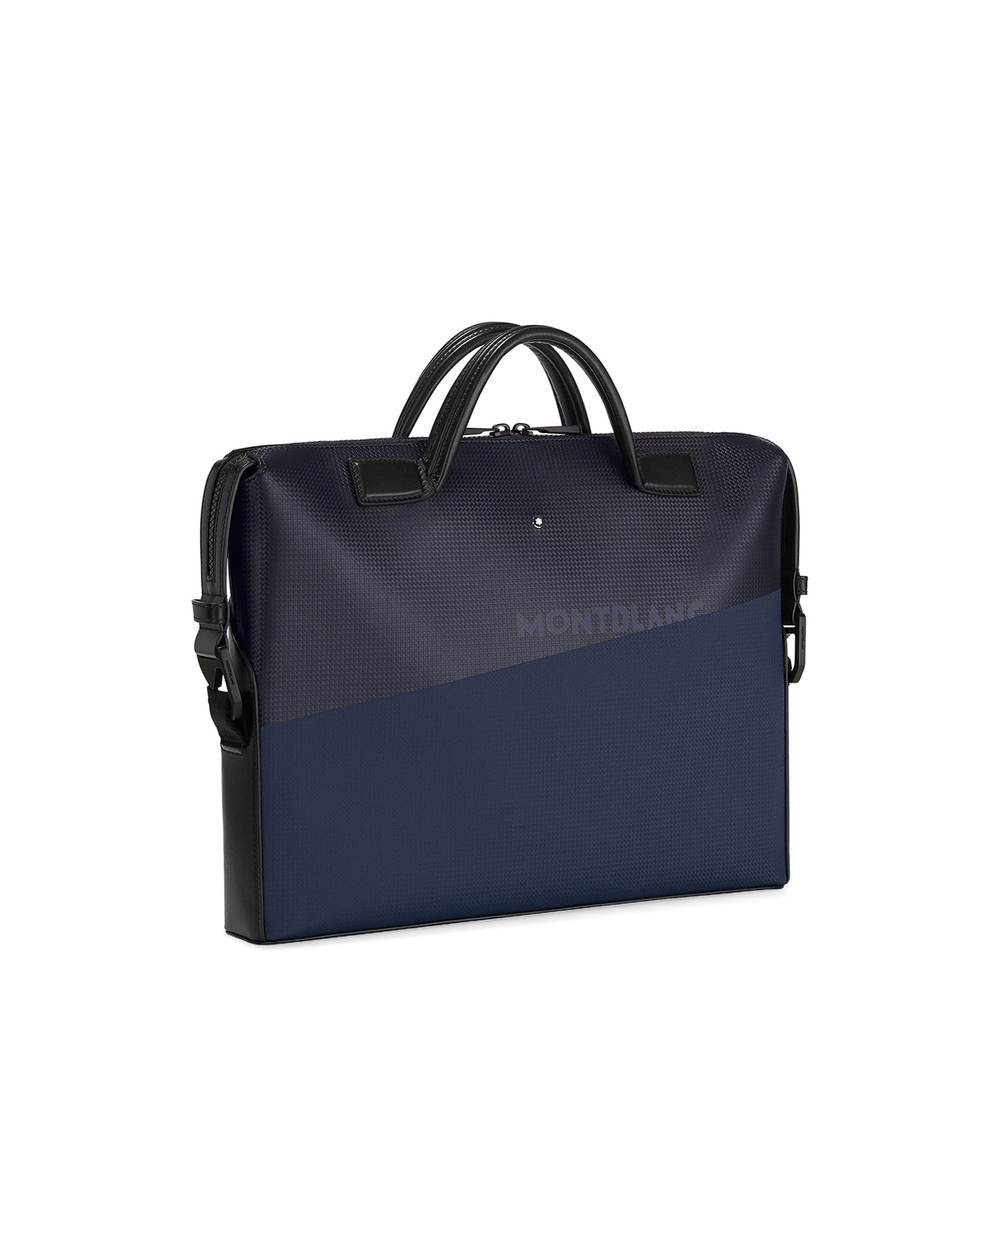 Кожаная сумка для документов Montblanc Extreme 2.0 Montblanc 128605, черный цвет • Купить в интернет-магазине Kameron